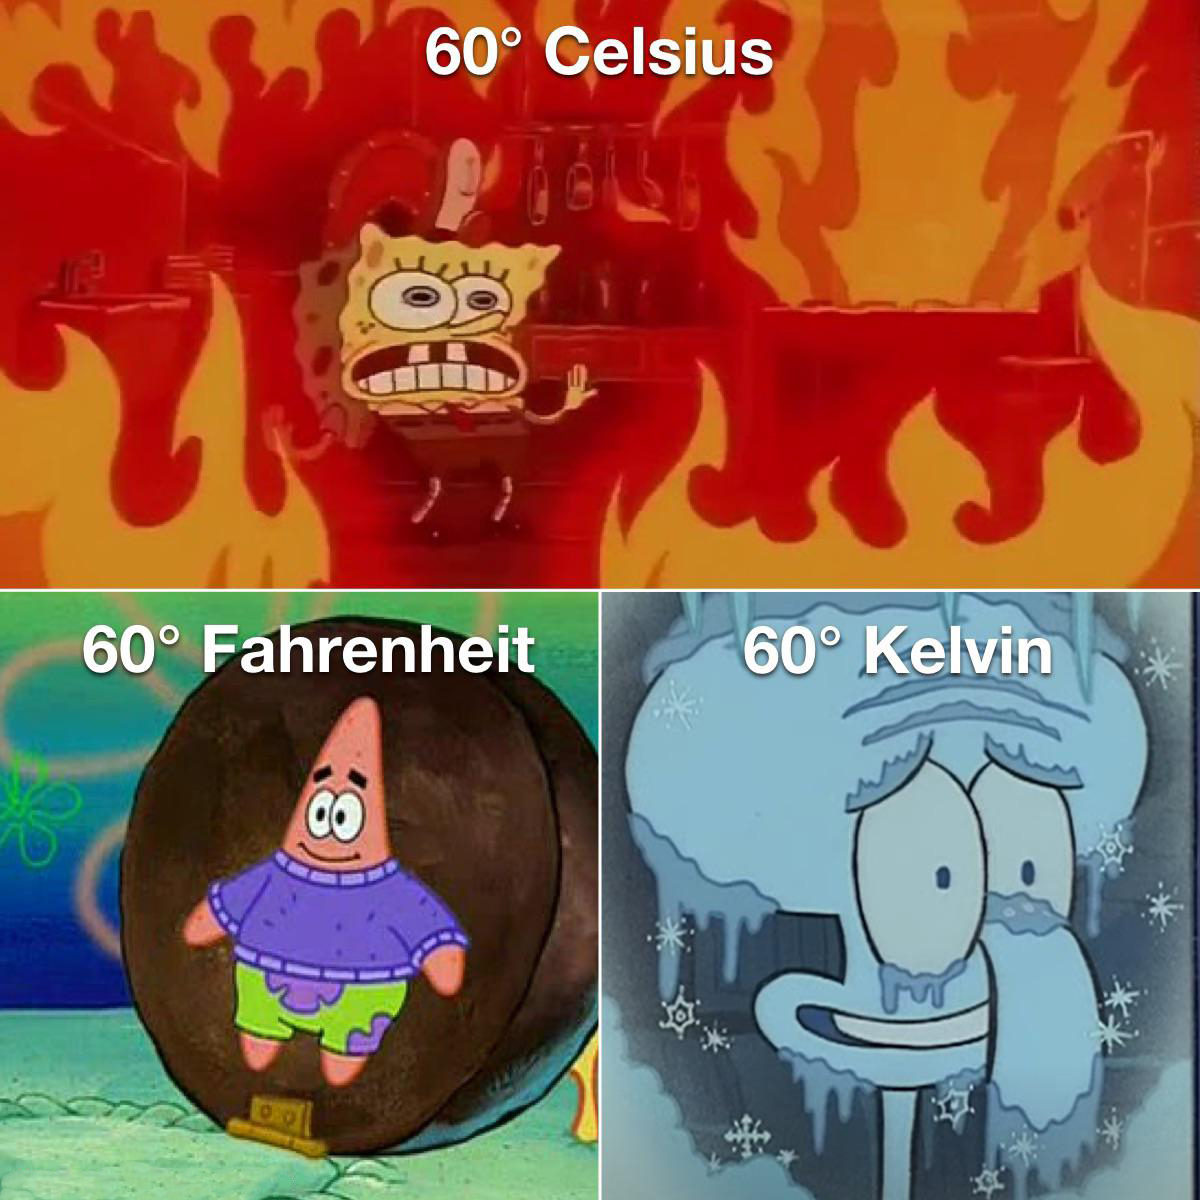 spongebob arizona meme - 60 Celsius 60 Fahrenheit 60 Kelvin Co so